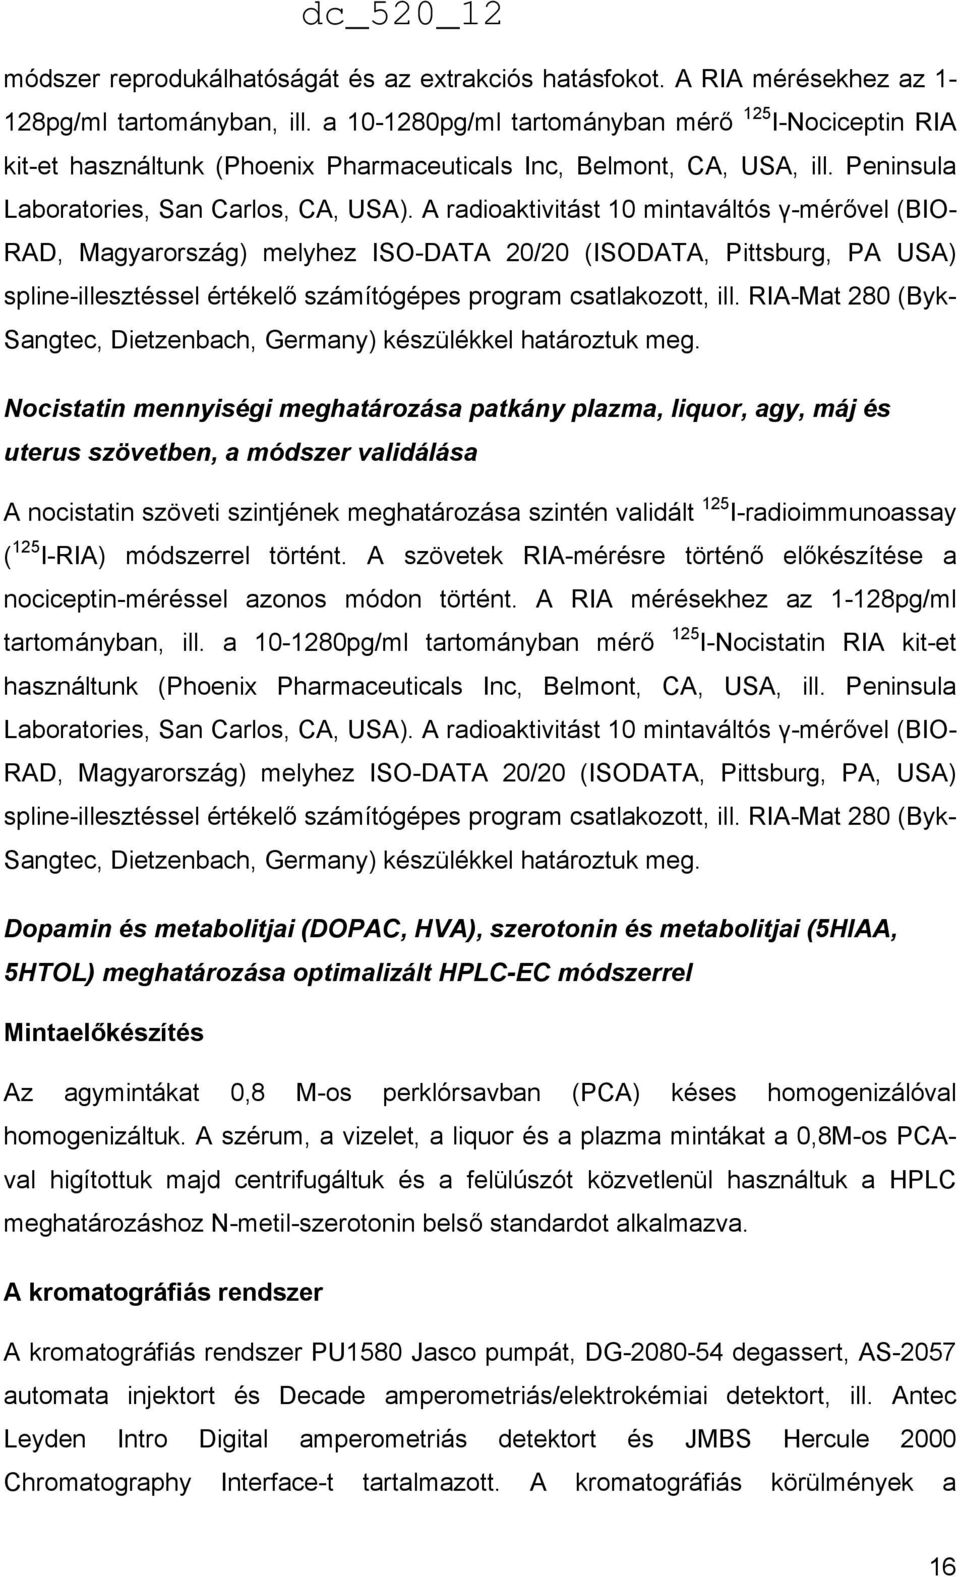 A radioaktivitást 10 mintaváltós γ-mérővel (BIO- RAD, Magyarország) melyhez ISO-DATA 20/20 (ISODATA, Pittsburg, PA USA) spline-illesztéssel értékelő számítógépes program csatlakozott, ill.